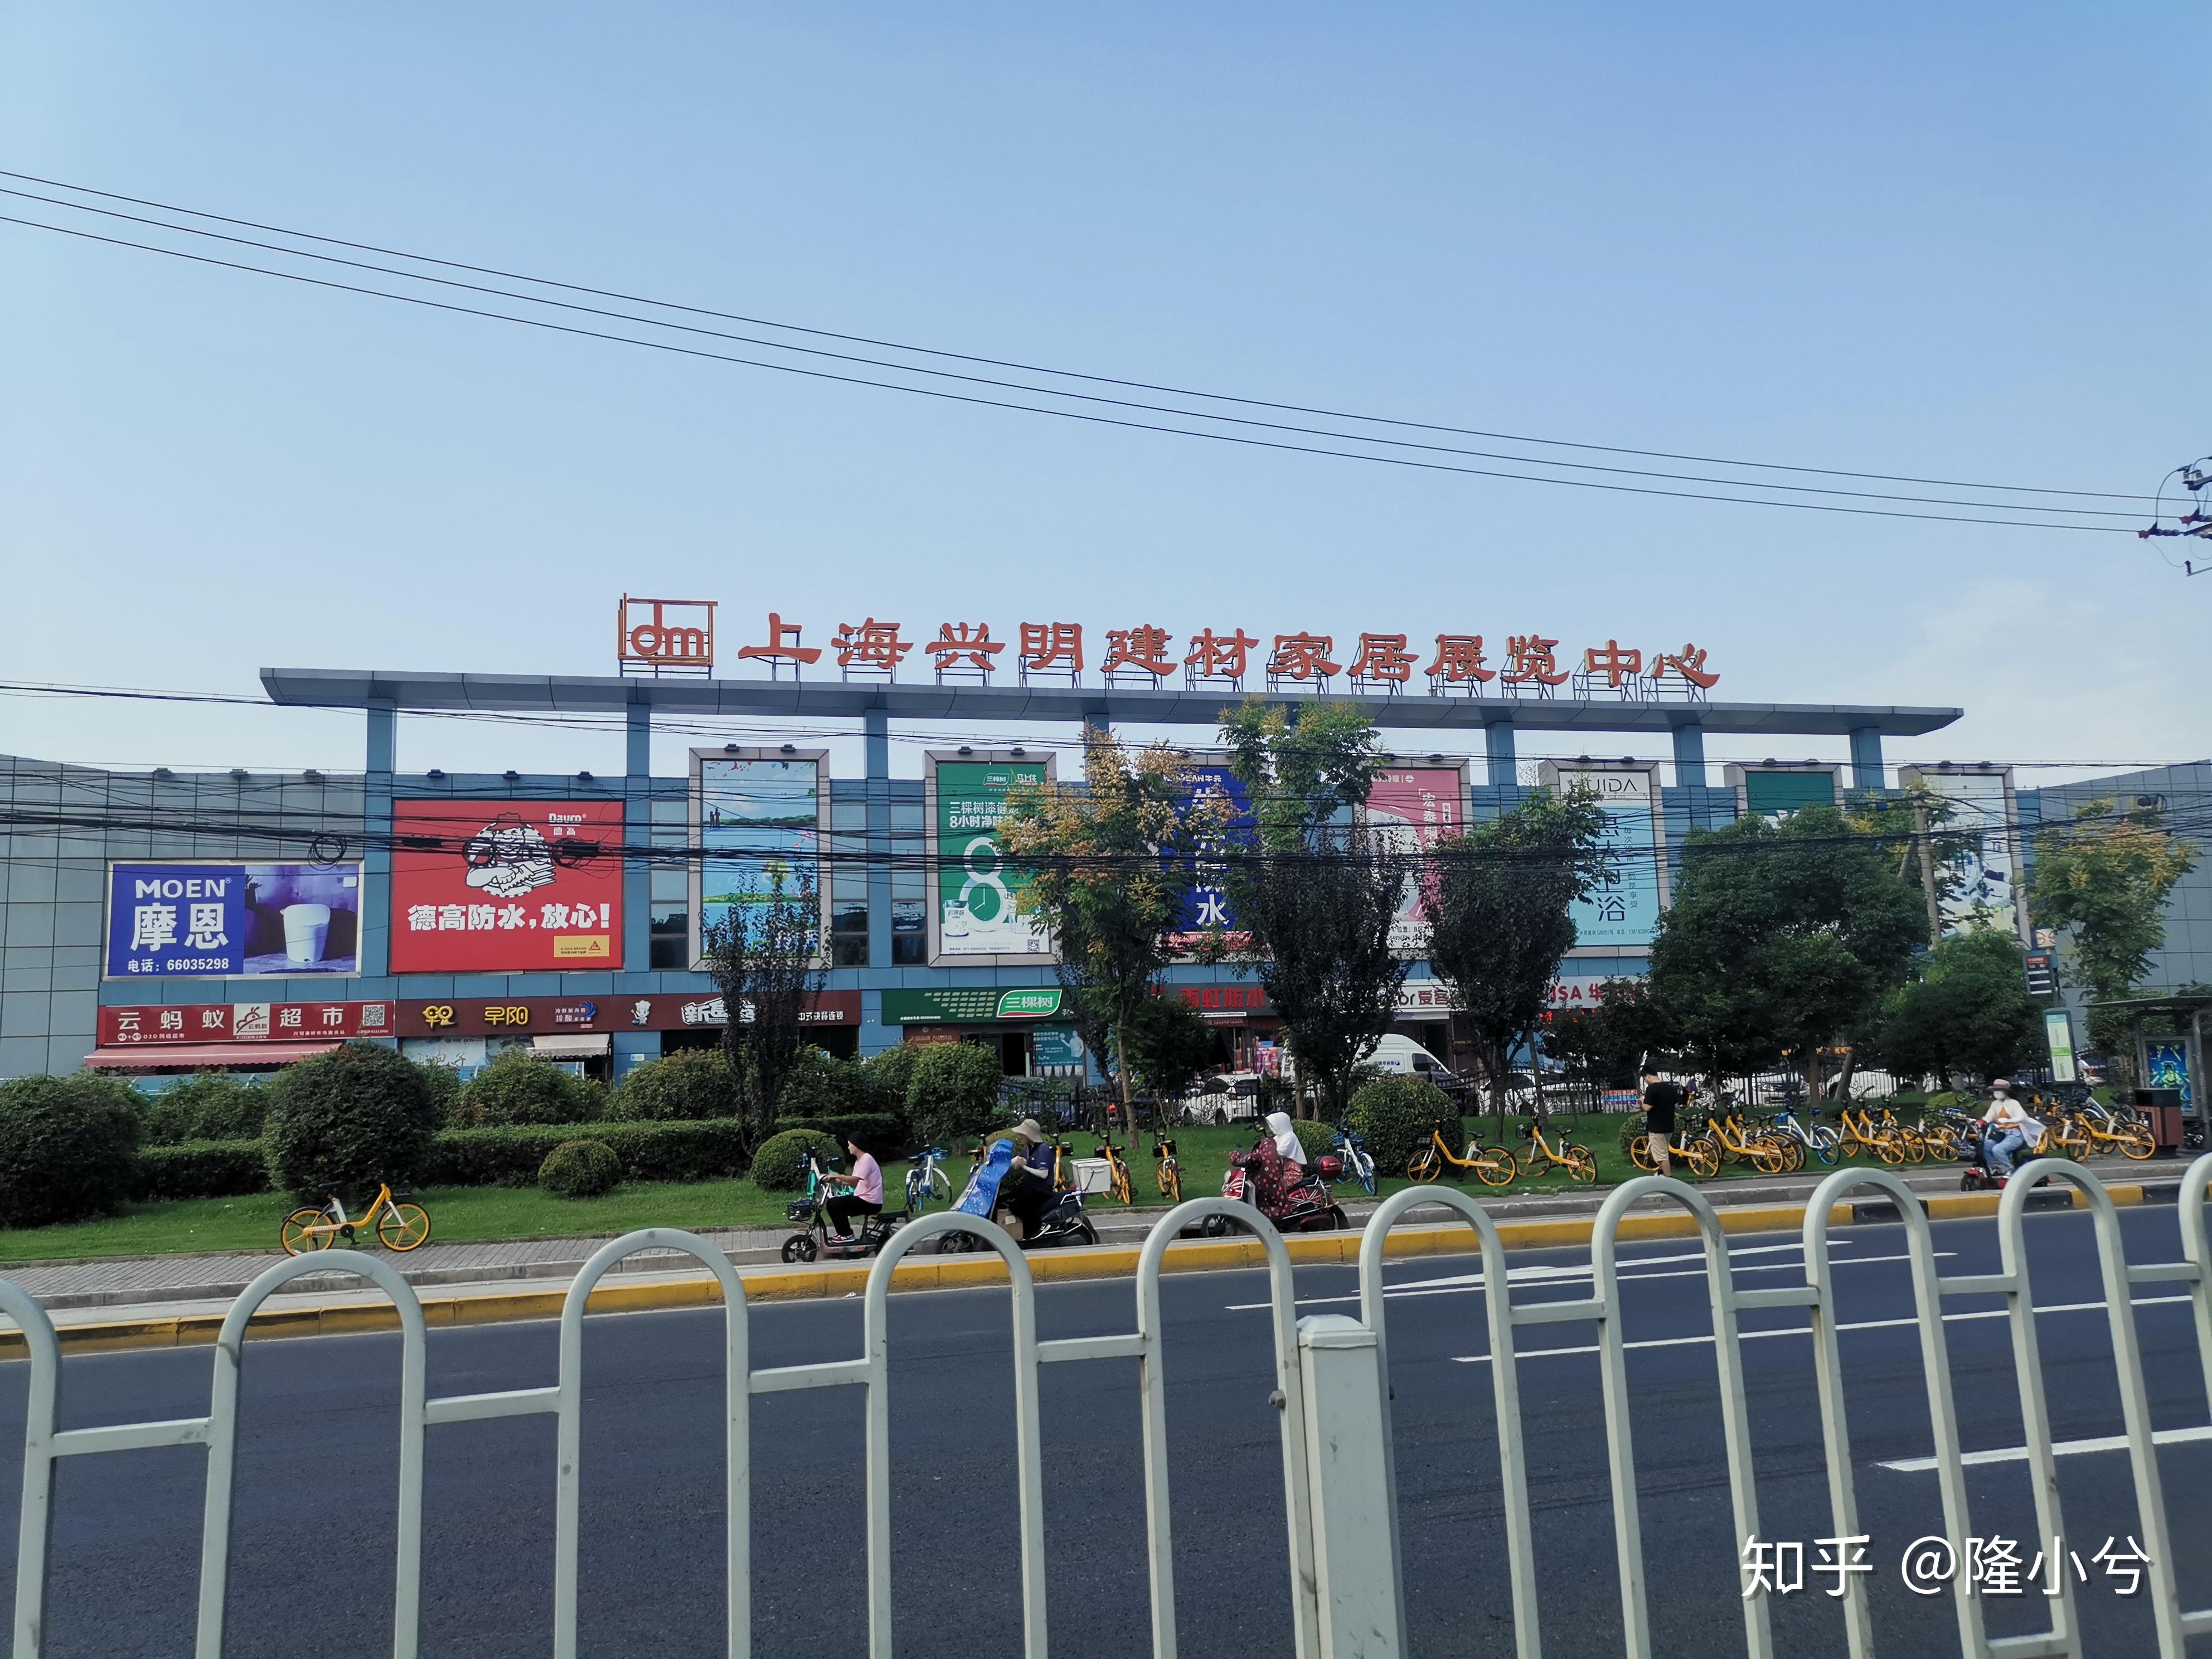 上海家具卖场指南(其他卖场篇)2020年10月 